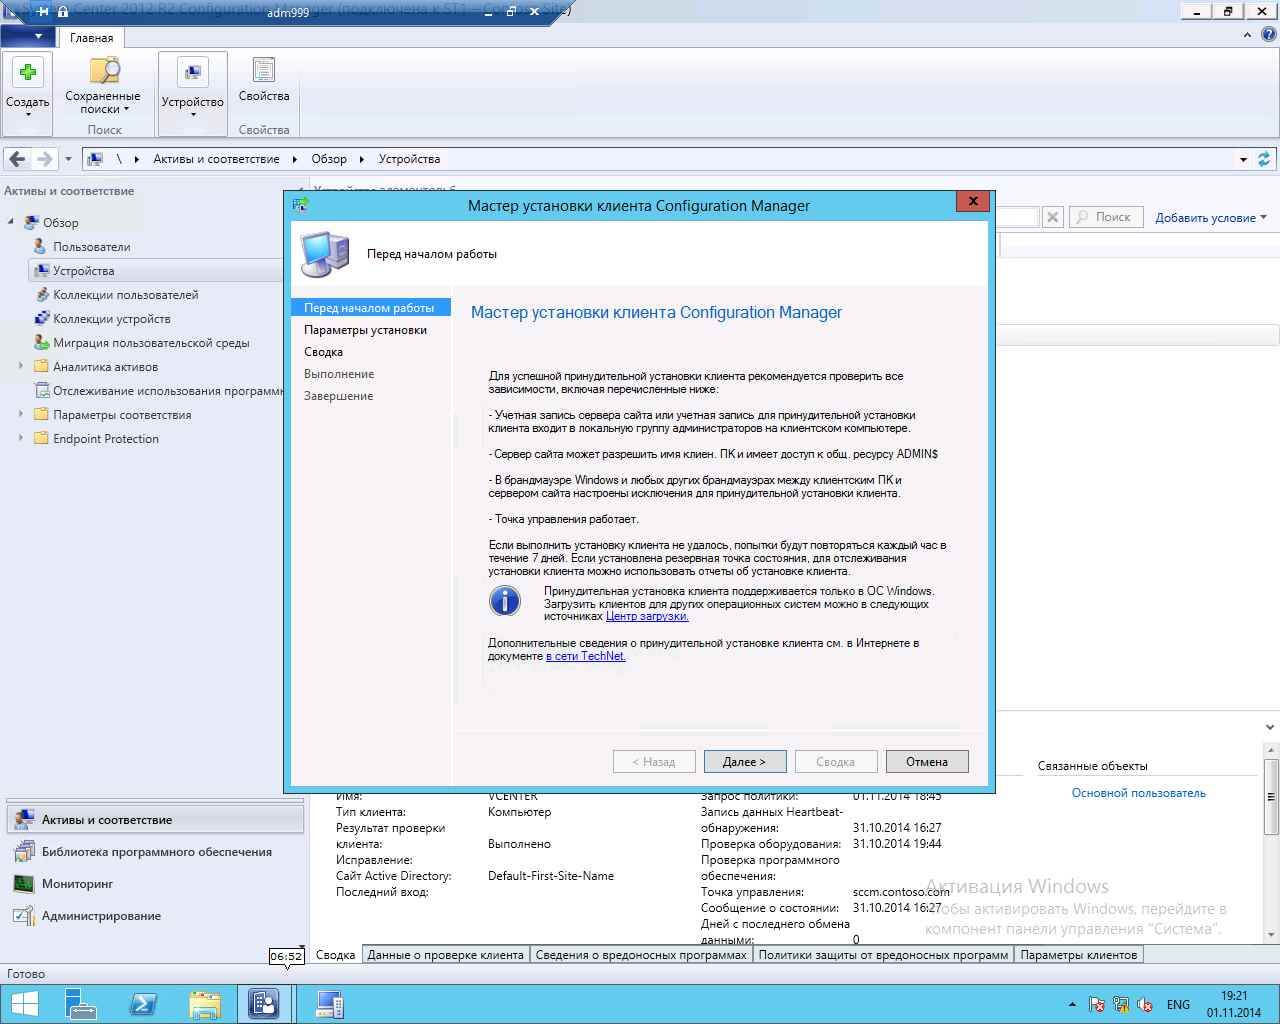 Как установить SCCM (System Center Configuration Manager) 2012R2 в windows server 2012R2 -6 часть. Как принудительно установить клиента-09